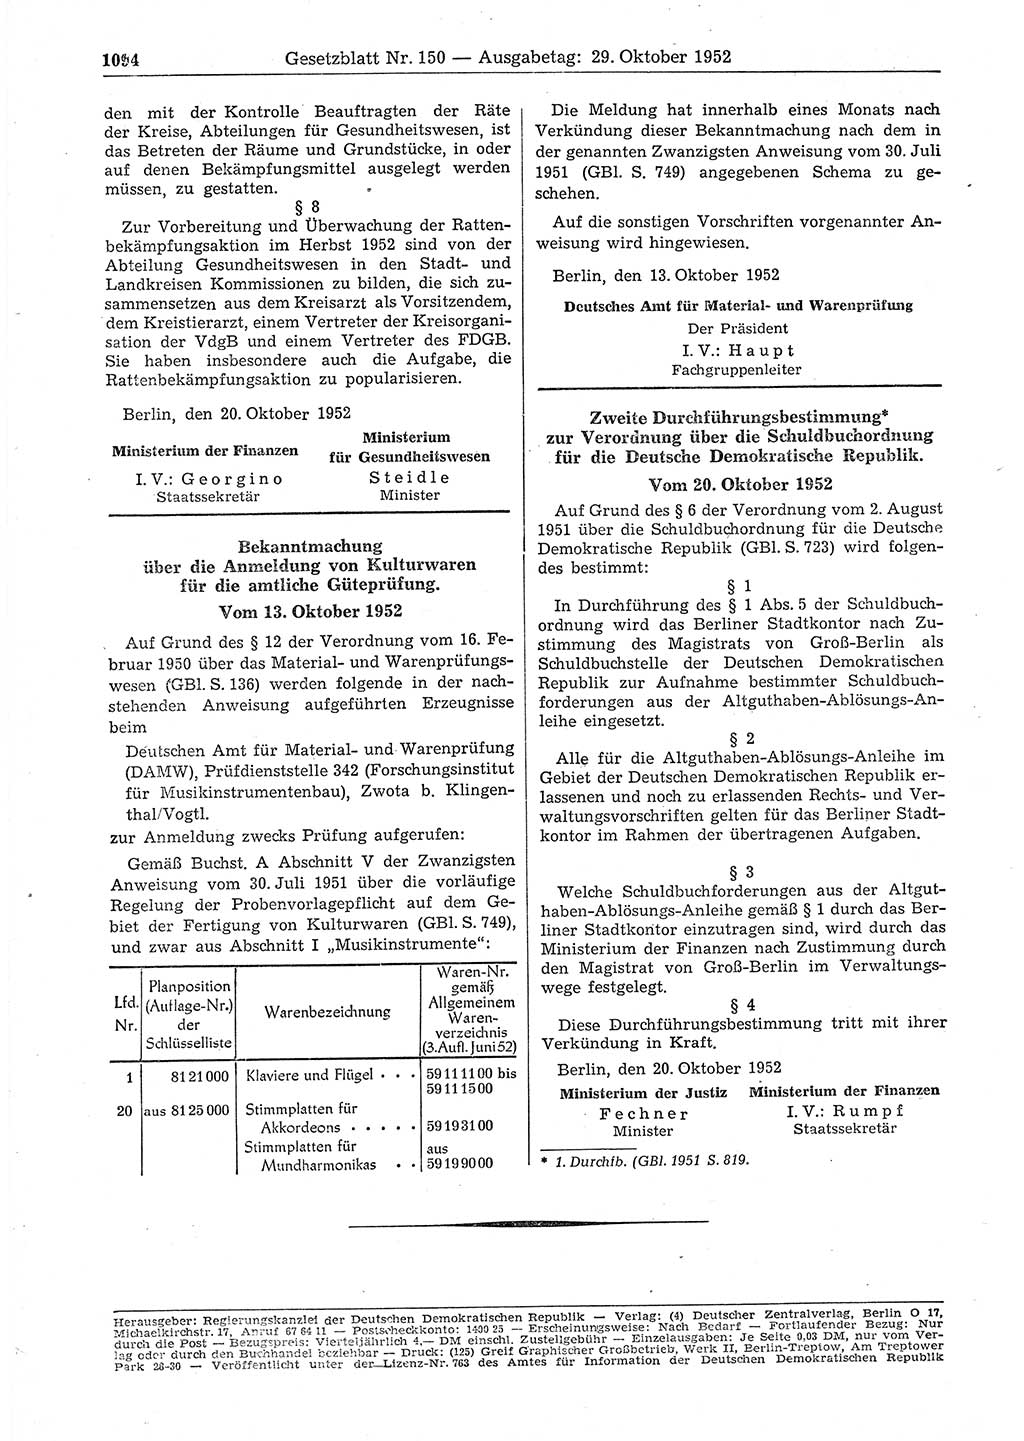 Gesetzblatt (GBl.) der Deutschen Demokratischen Republik (DDR) 1952, Seite 1094 (GBl. DDR 1952, S. 1094)